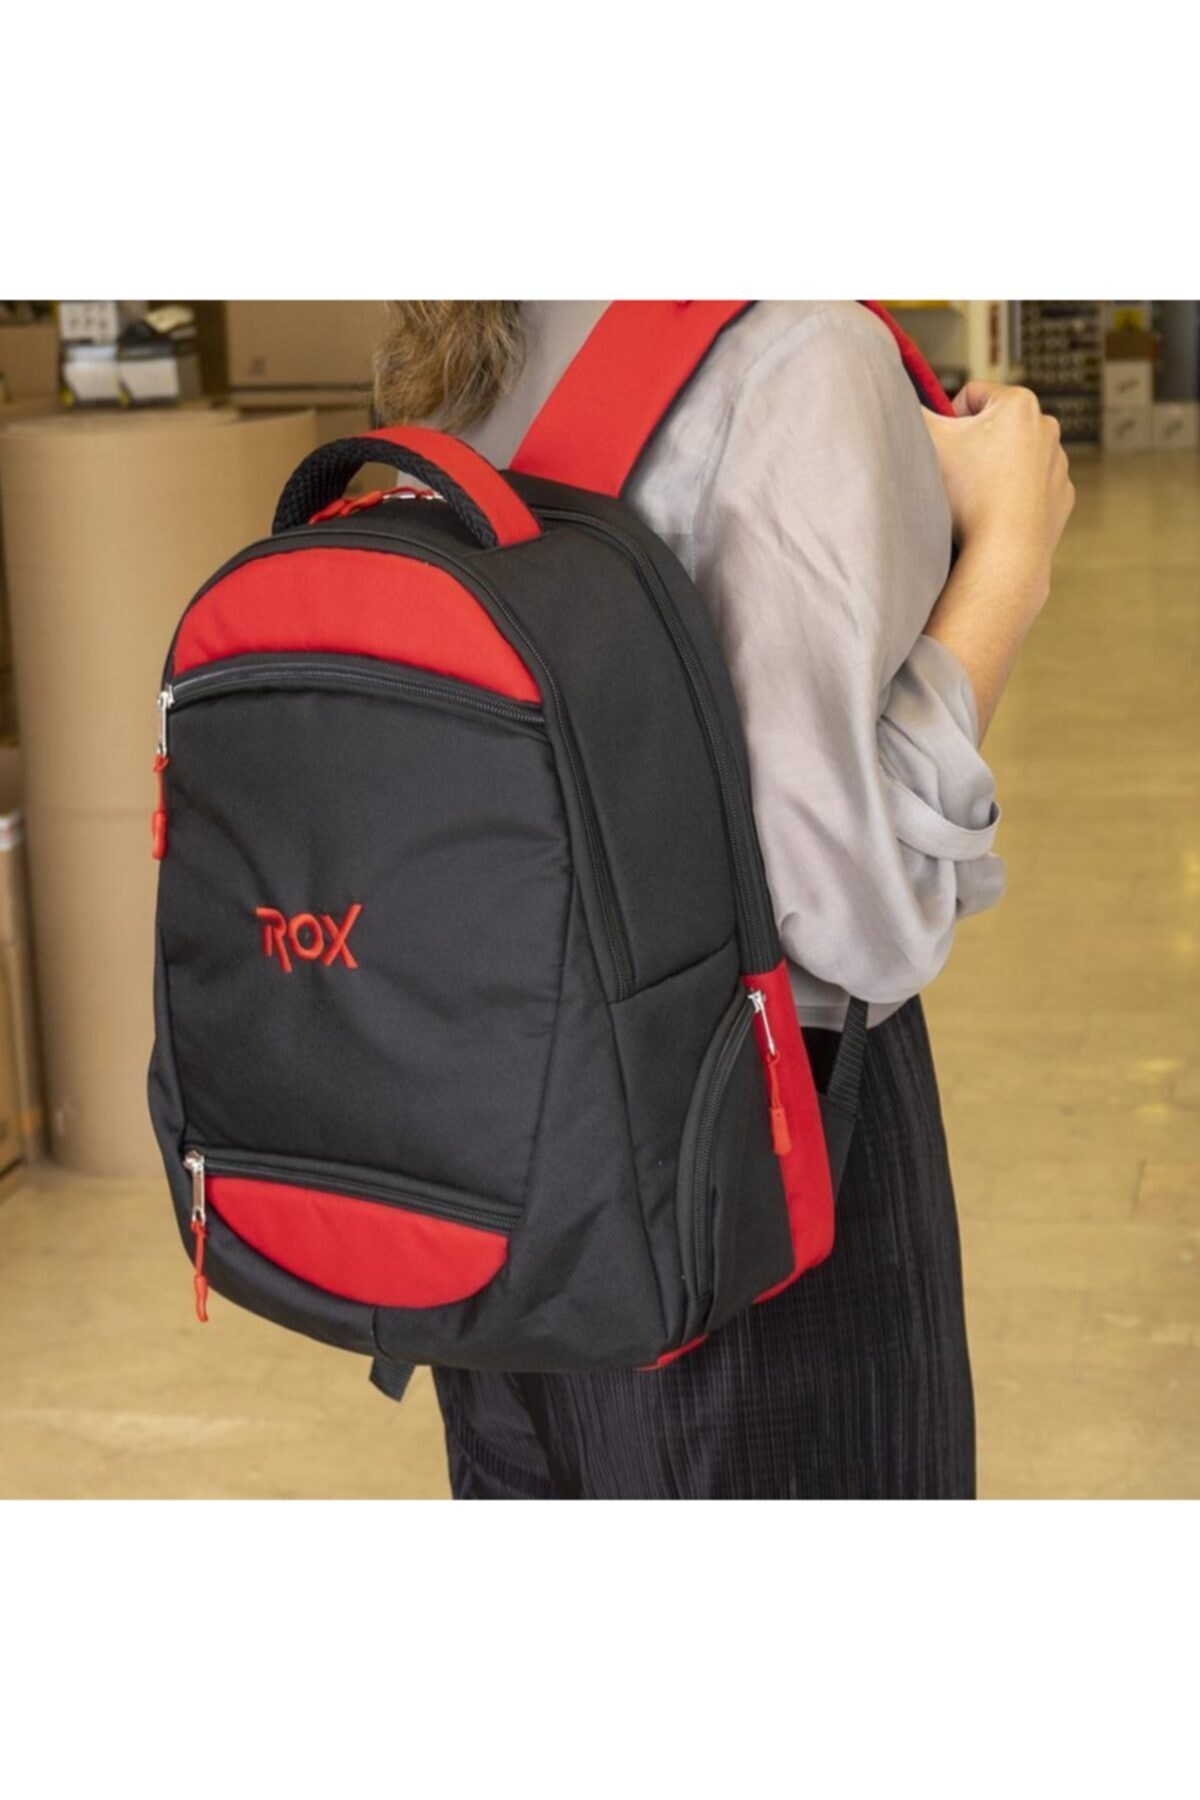 Rox 1095 Robust Bag Imperteks Sırt Çantası